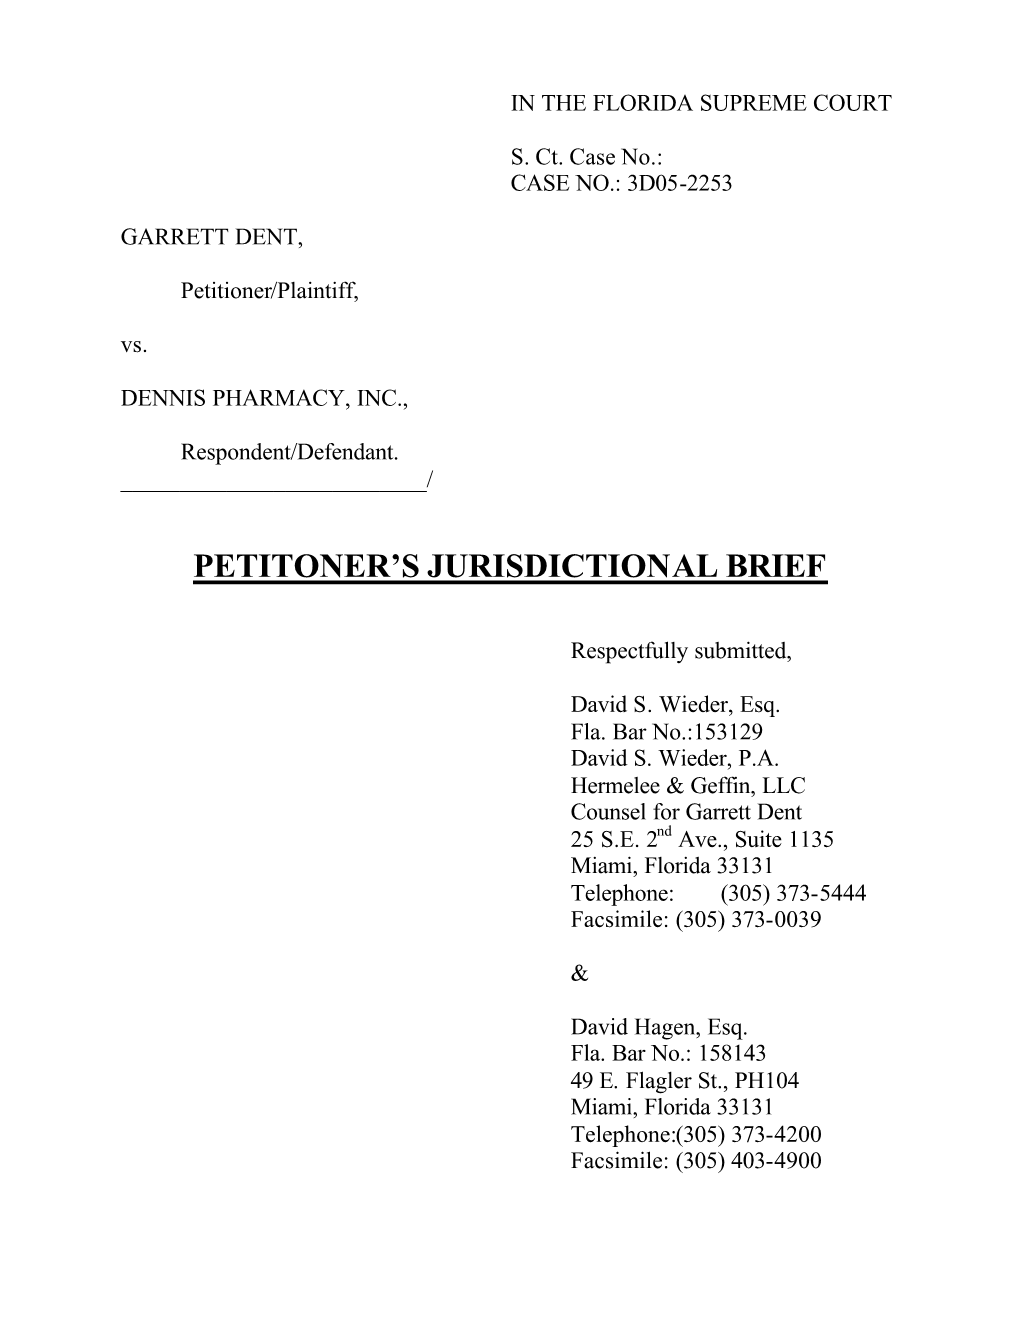 Petitoner's Jurisdictional Brief